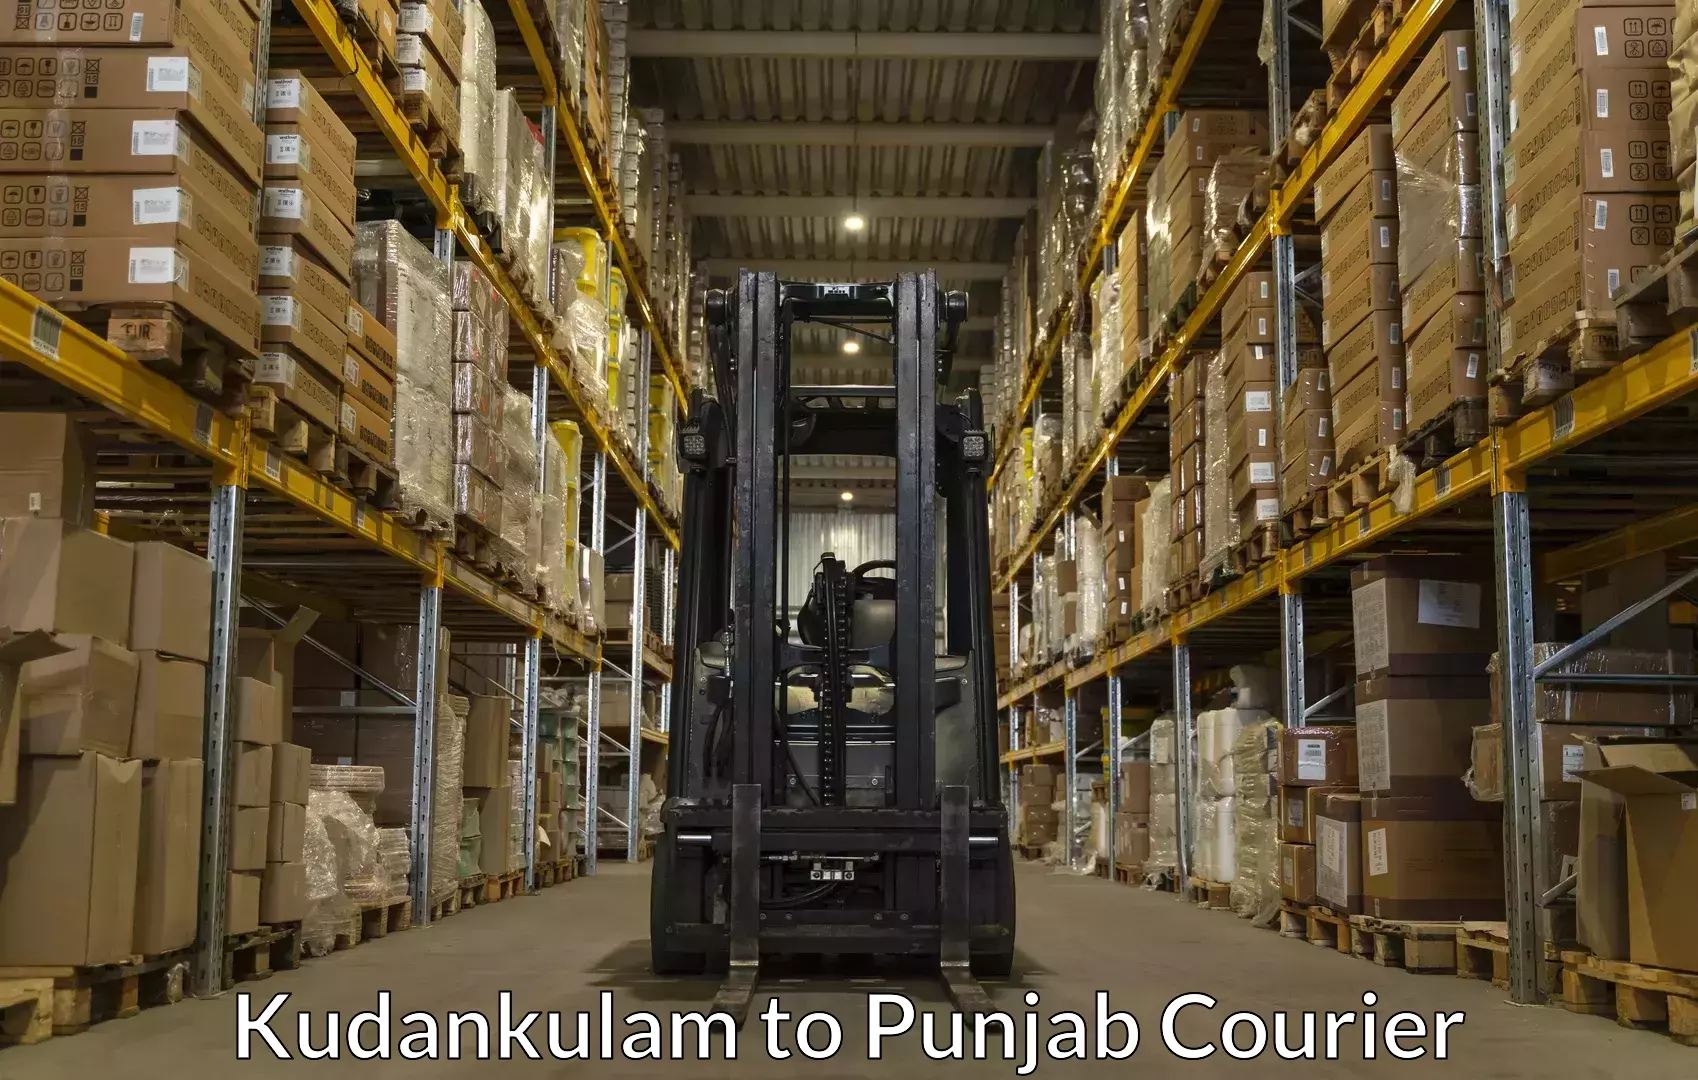 Baggage courier strategy Kudankulam to Central University of Punjab Bathinda